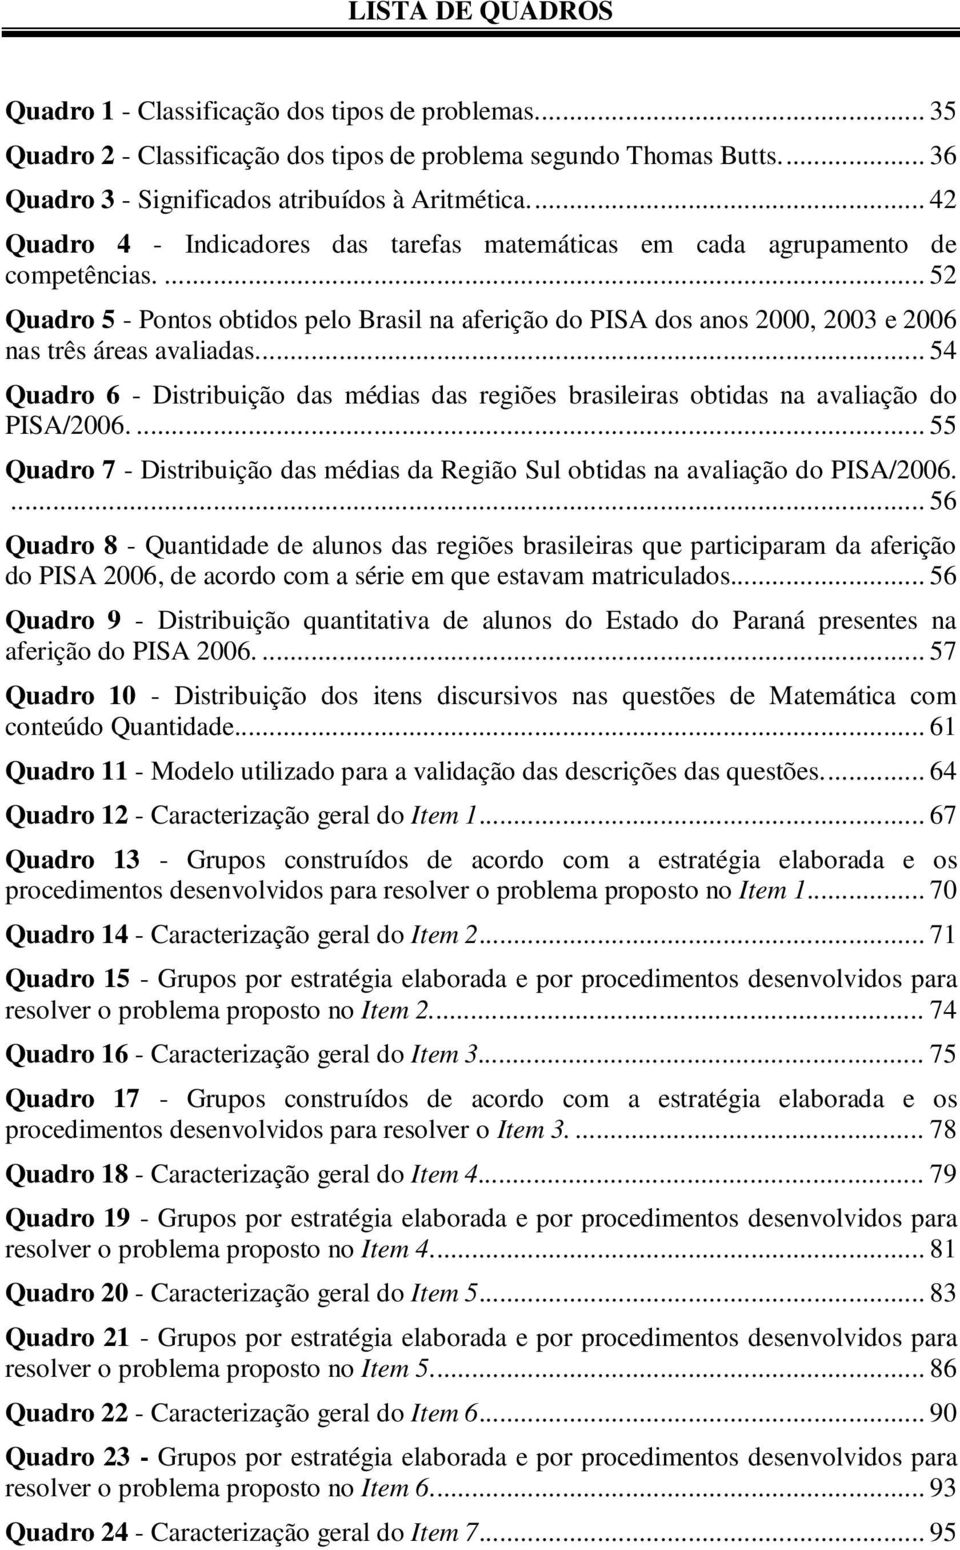 ... 52 Quadro 5 - Pontos obtidos pelo Brasil na aferição do PISA dos anos 2000, 2003 e 2006 nas três áreas avaliadas.